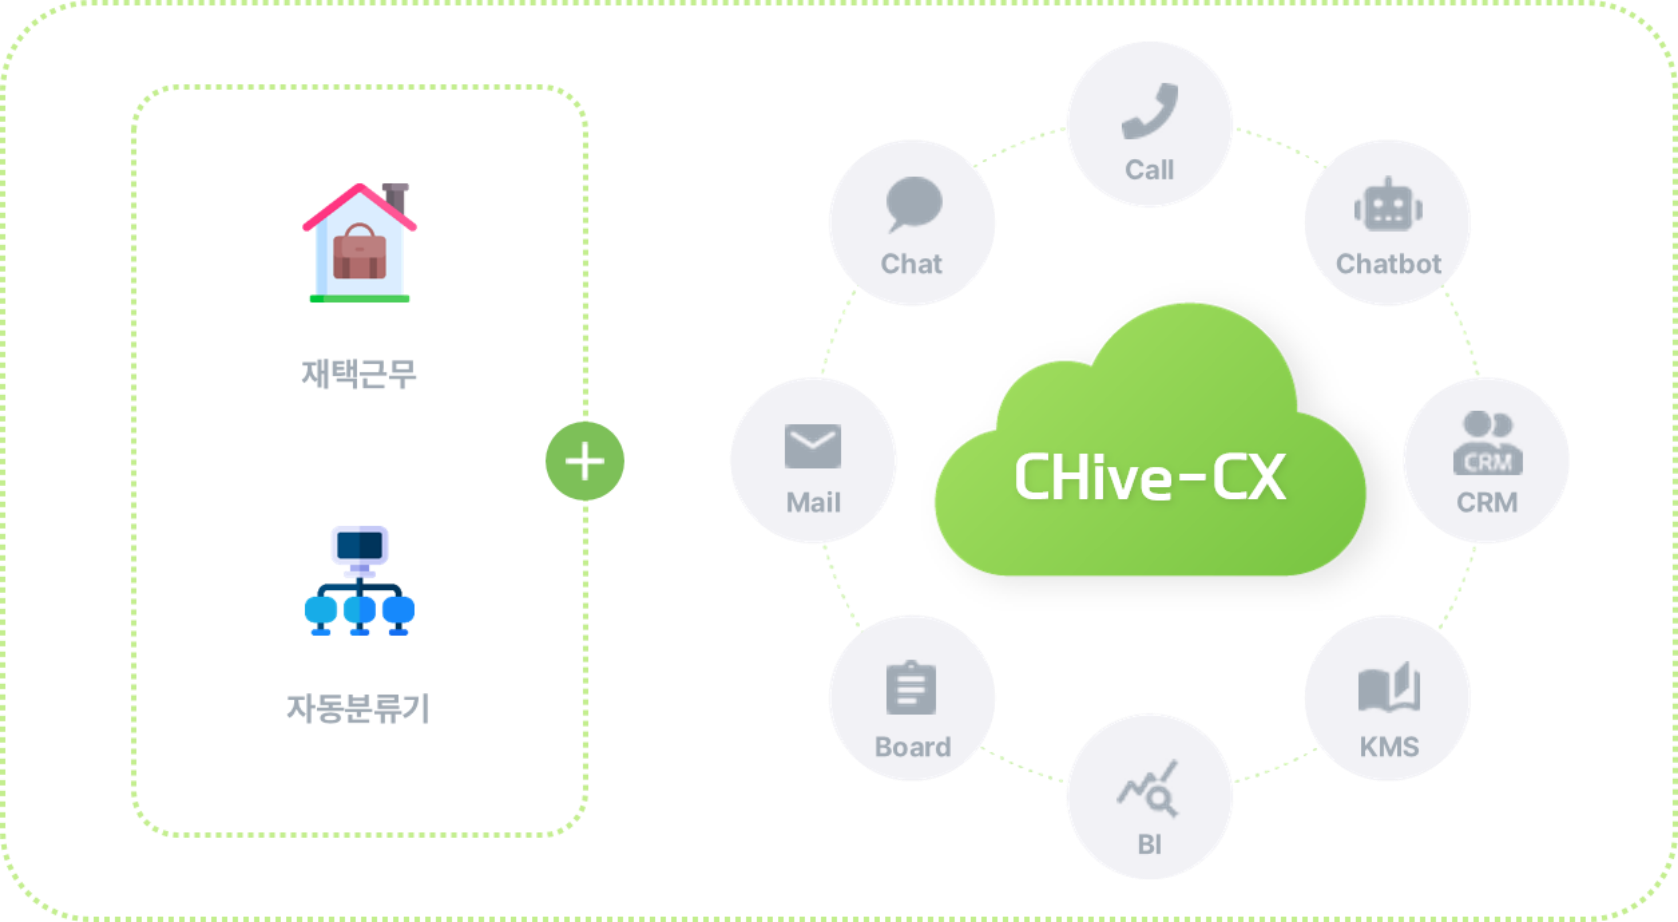 클라우드 컨택센터 서비스 CHive-CX 채팅, 전화, 챗봇, 메일, 게시판, BI, KMS, CRM